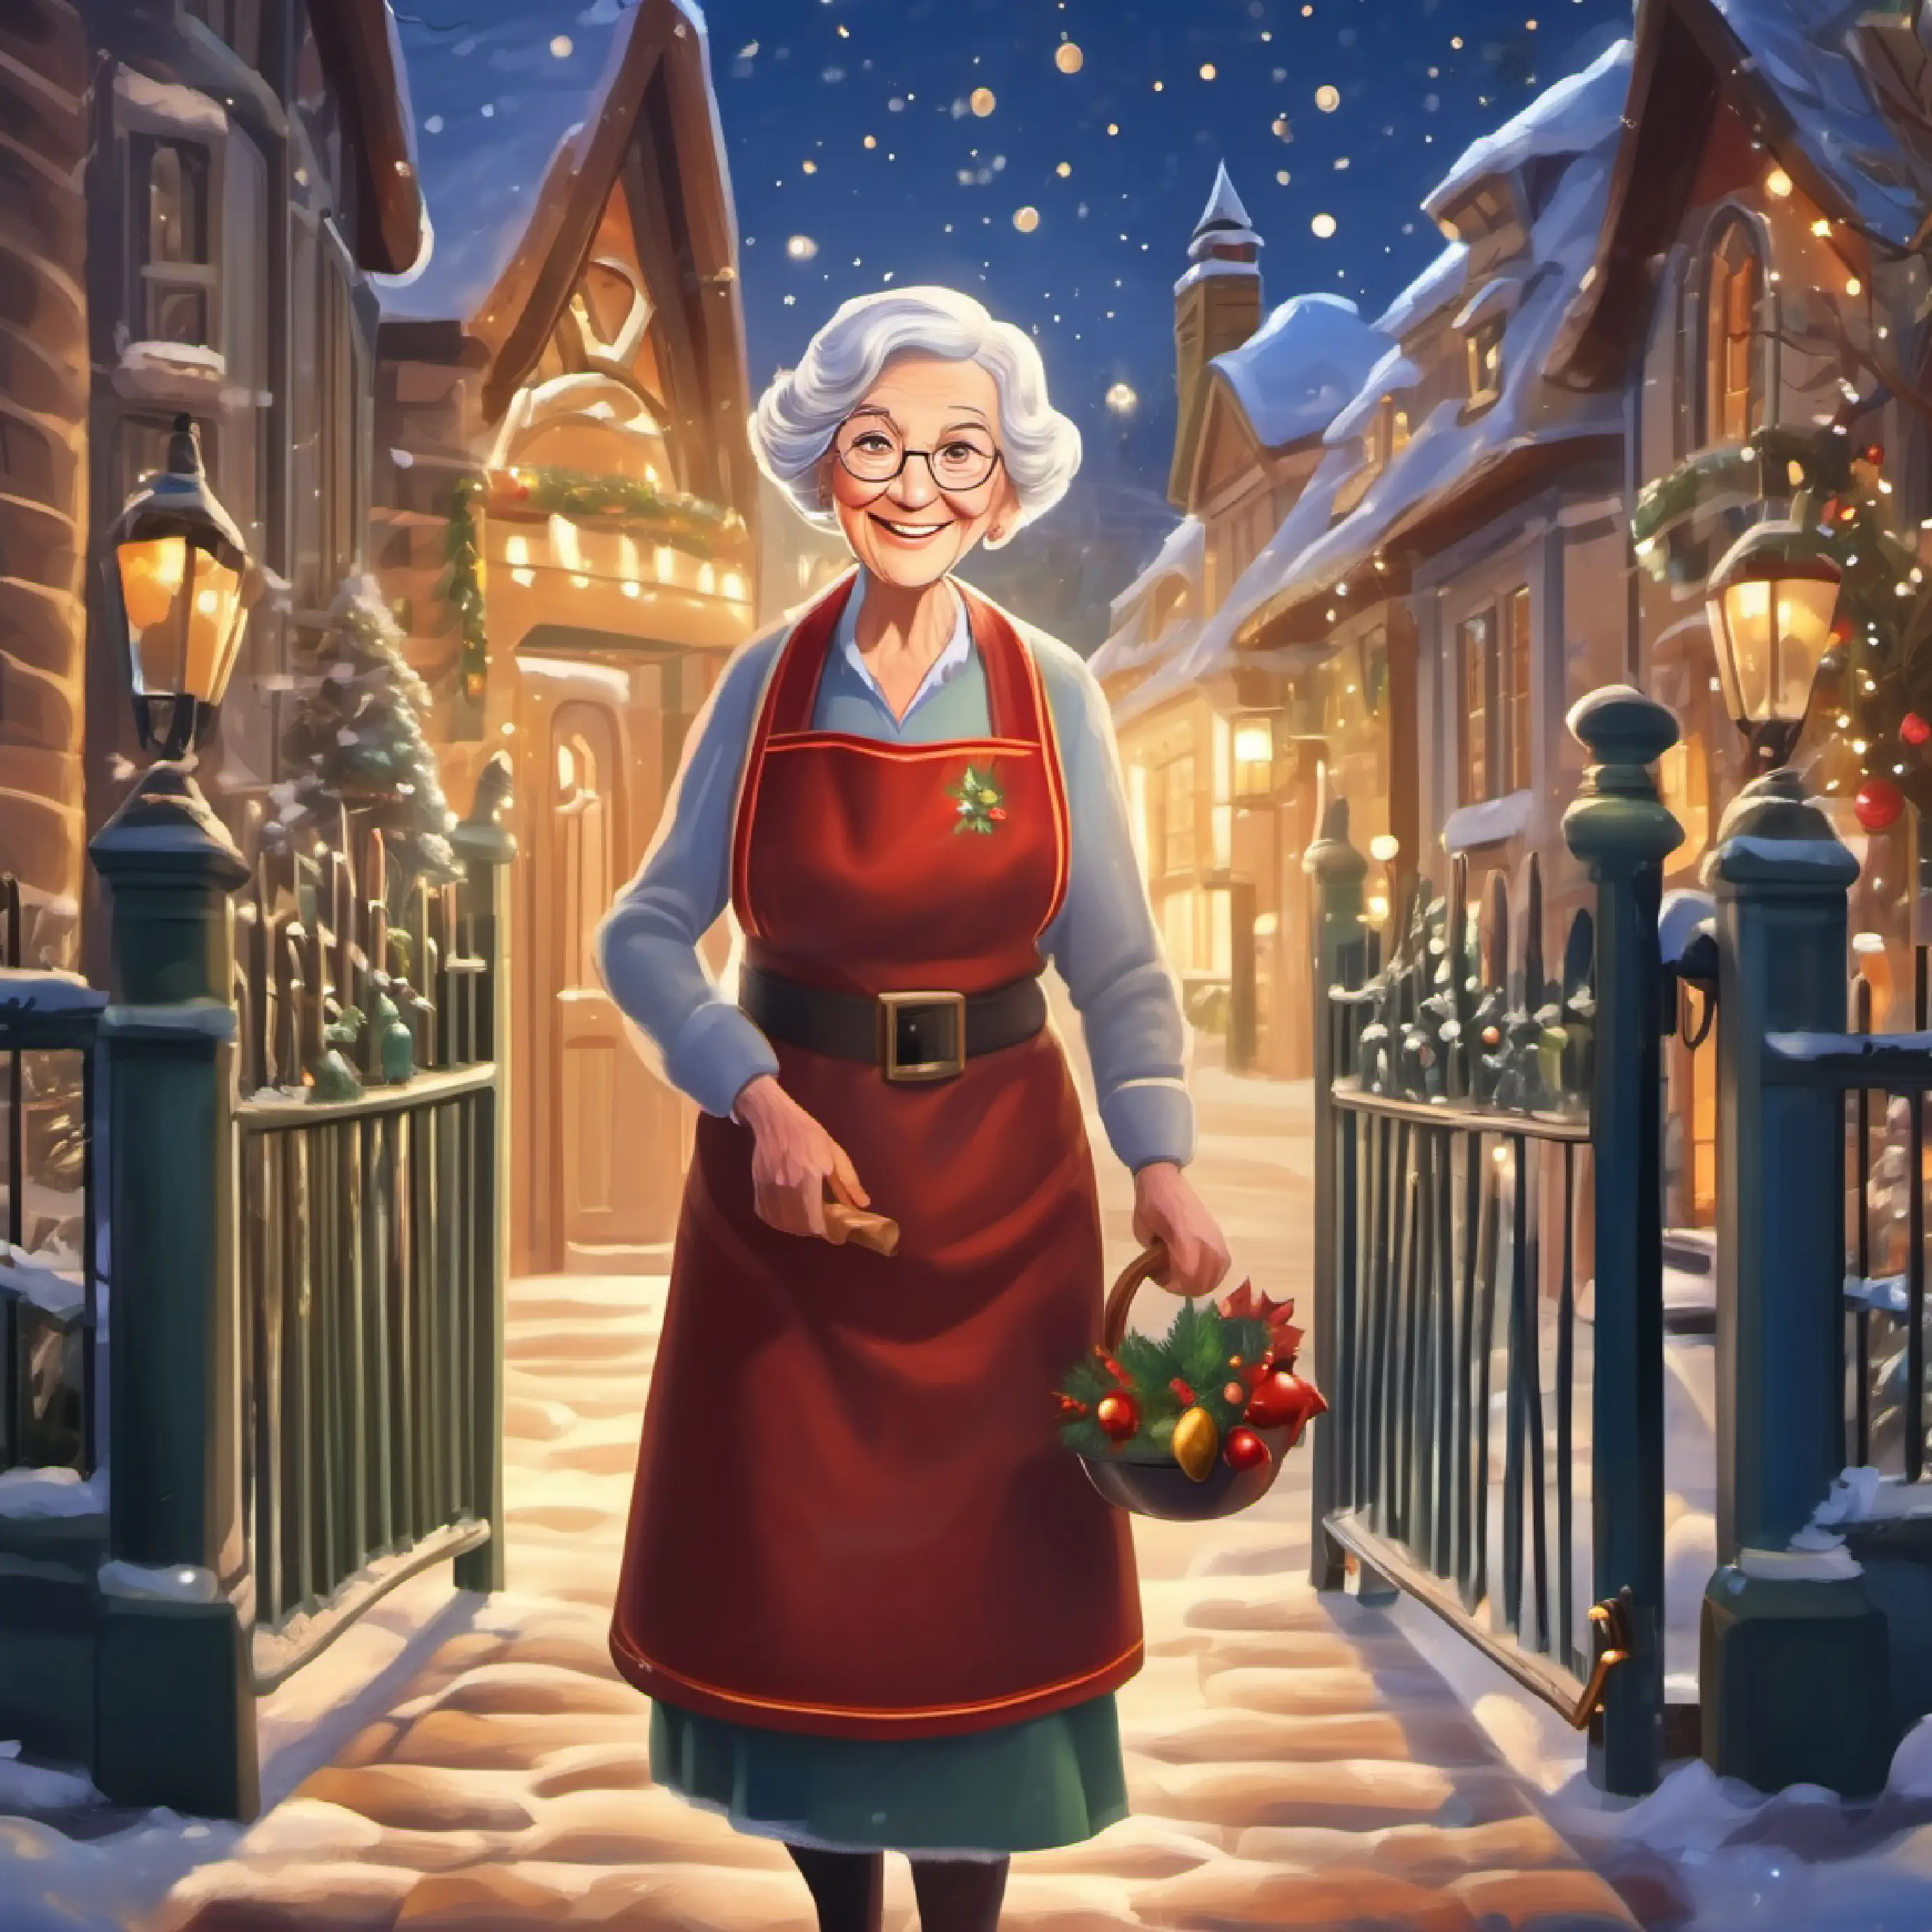 Elderly woman, twinkling eyes, always smiling, wears an apron as the caretaker unlocking school gates.